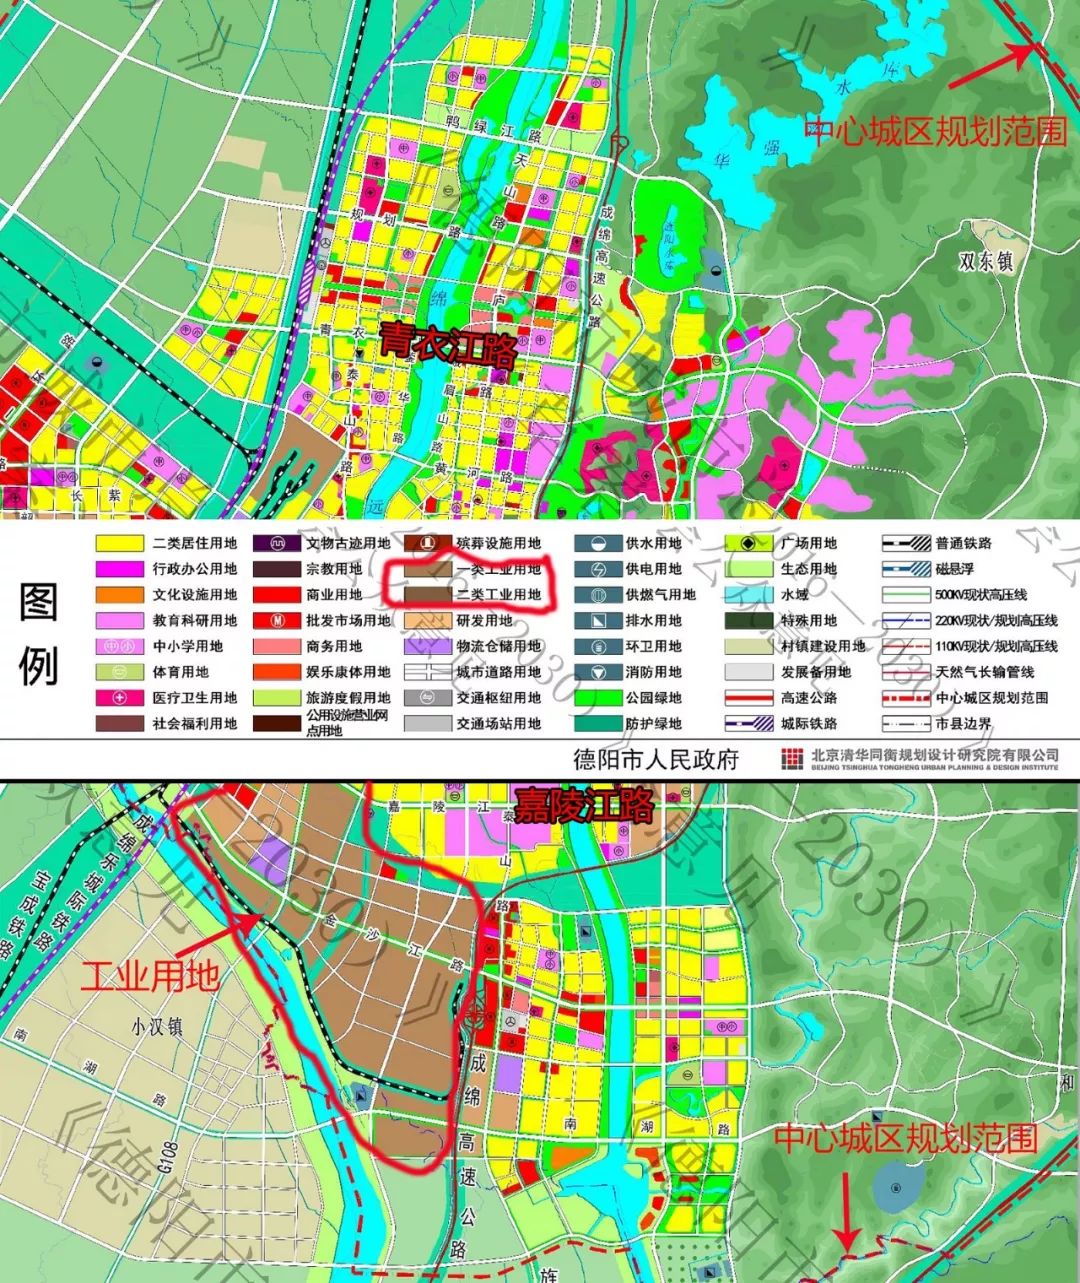 而且,根据 《德阳市城市总体规划(2016—2030)》,可以明显看出政府